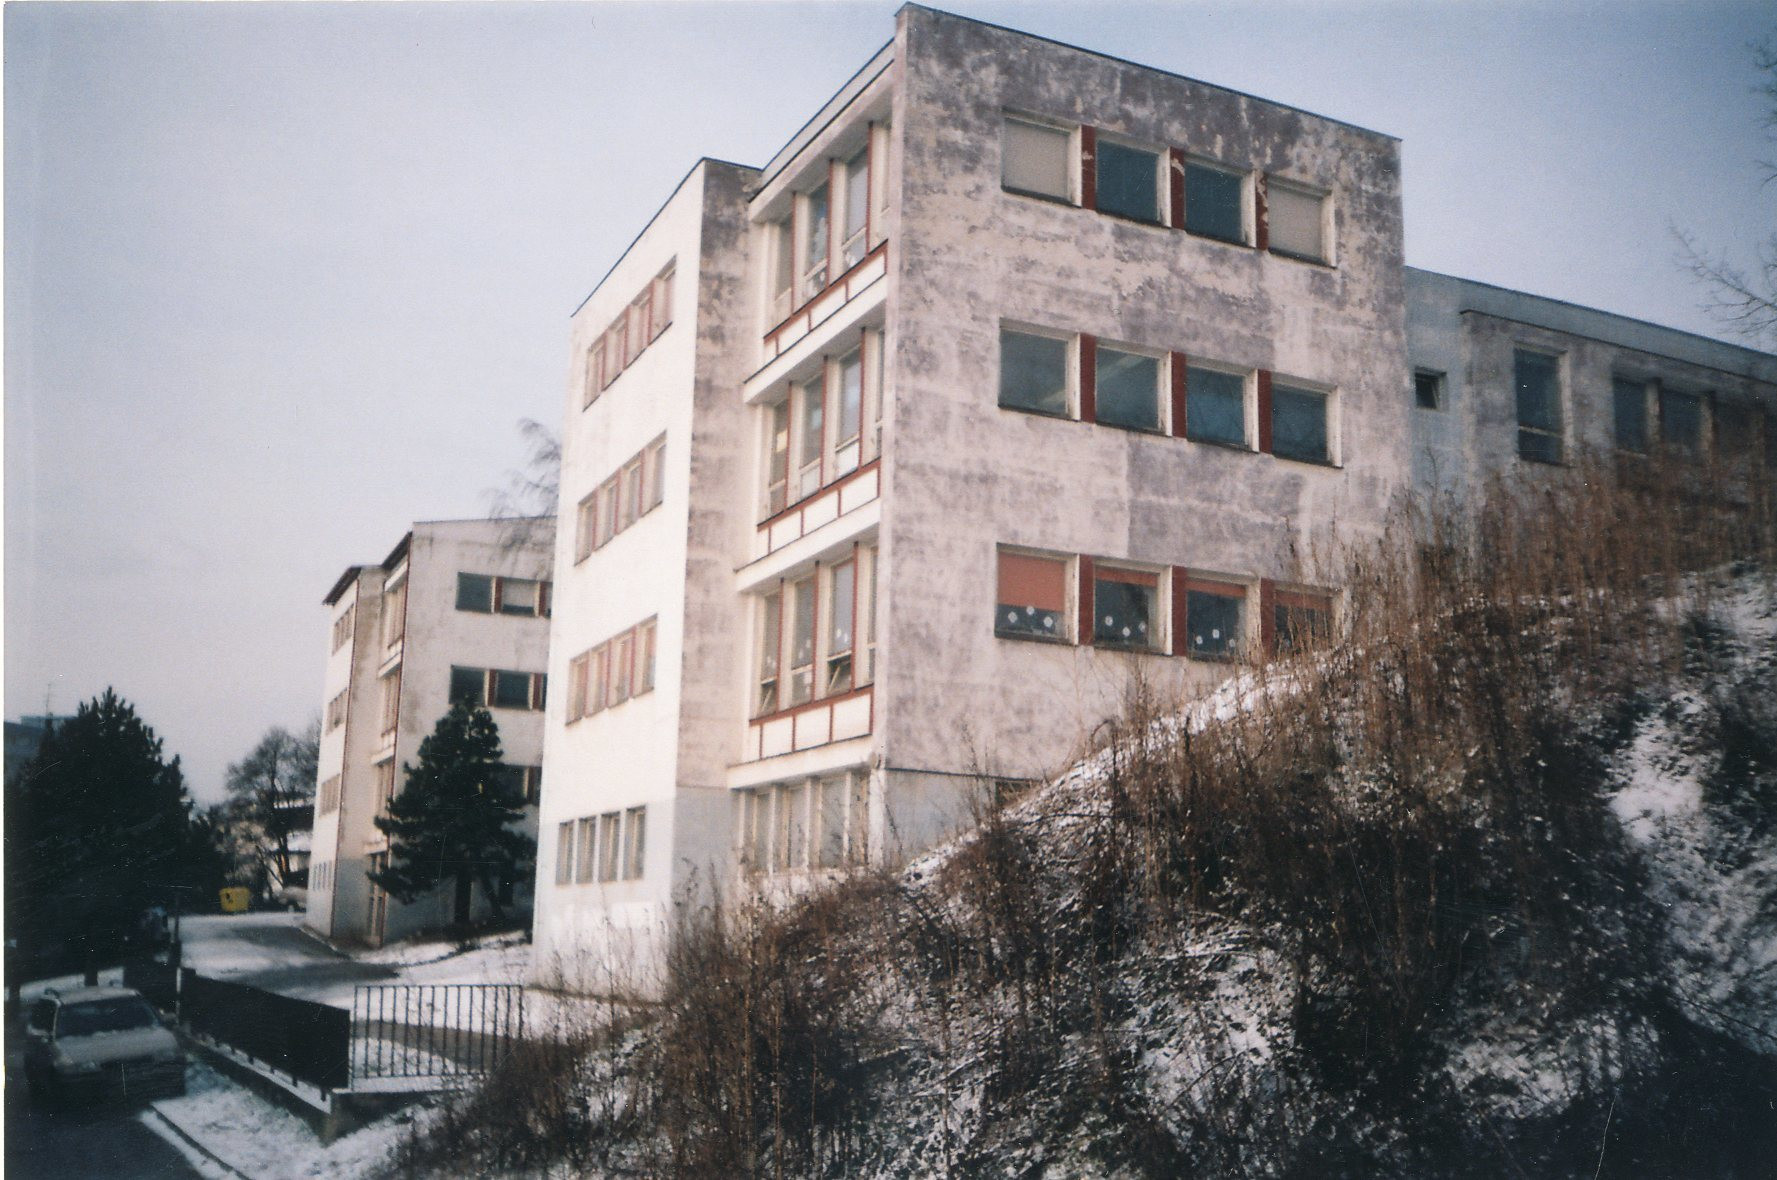 Pavilónová základná škola na Cádrovej ulici na bratislavských Kramároch - historická fotografia